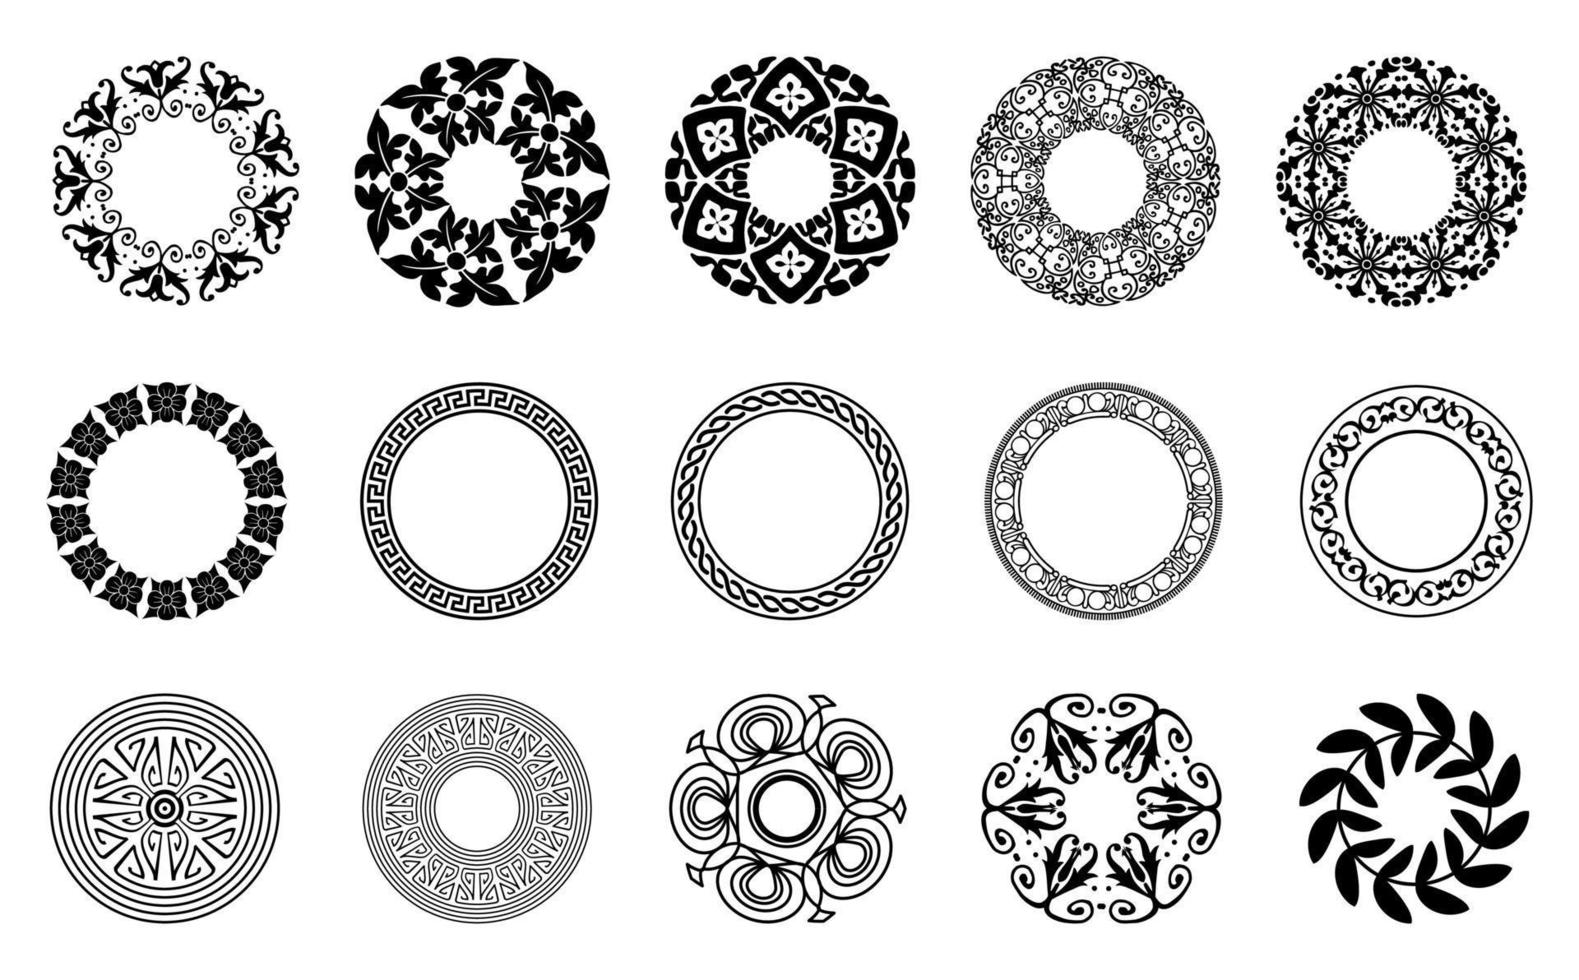 ronde vorm mandala ornament set, vector transparante achtergrond goed voor een verscheidenheid aan ontwerpmaterialen, achtergronden, uitnodigingen, posters, sociale media, sjablonen